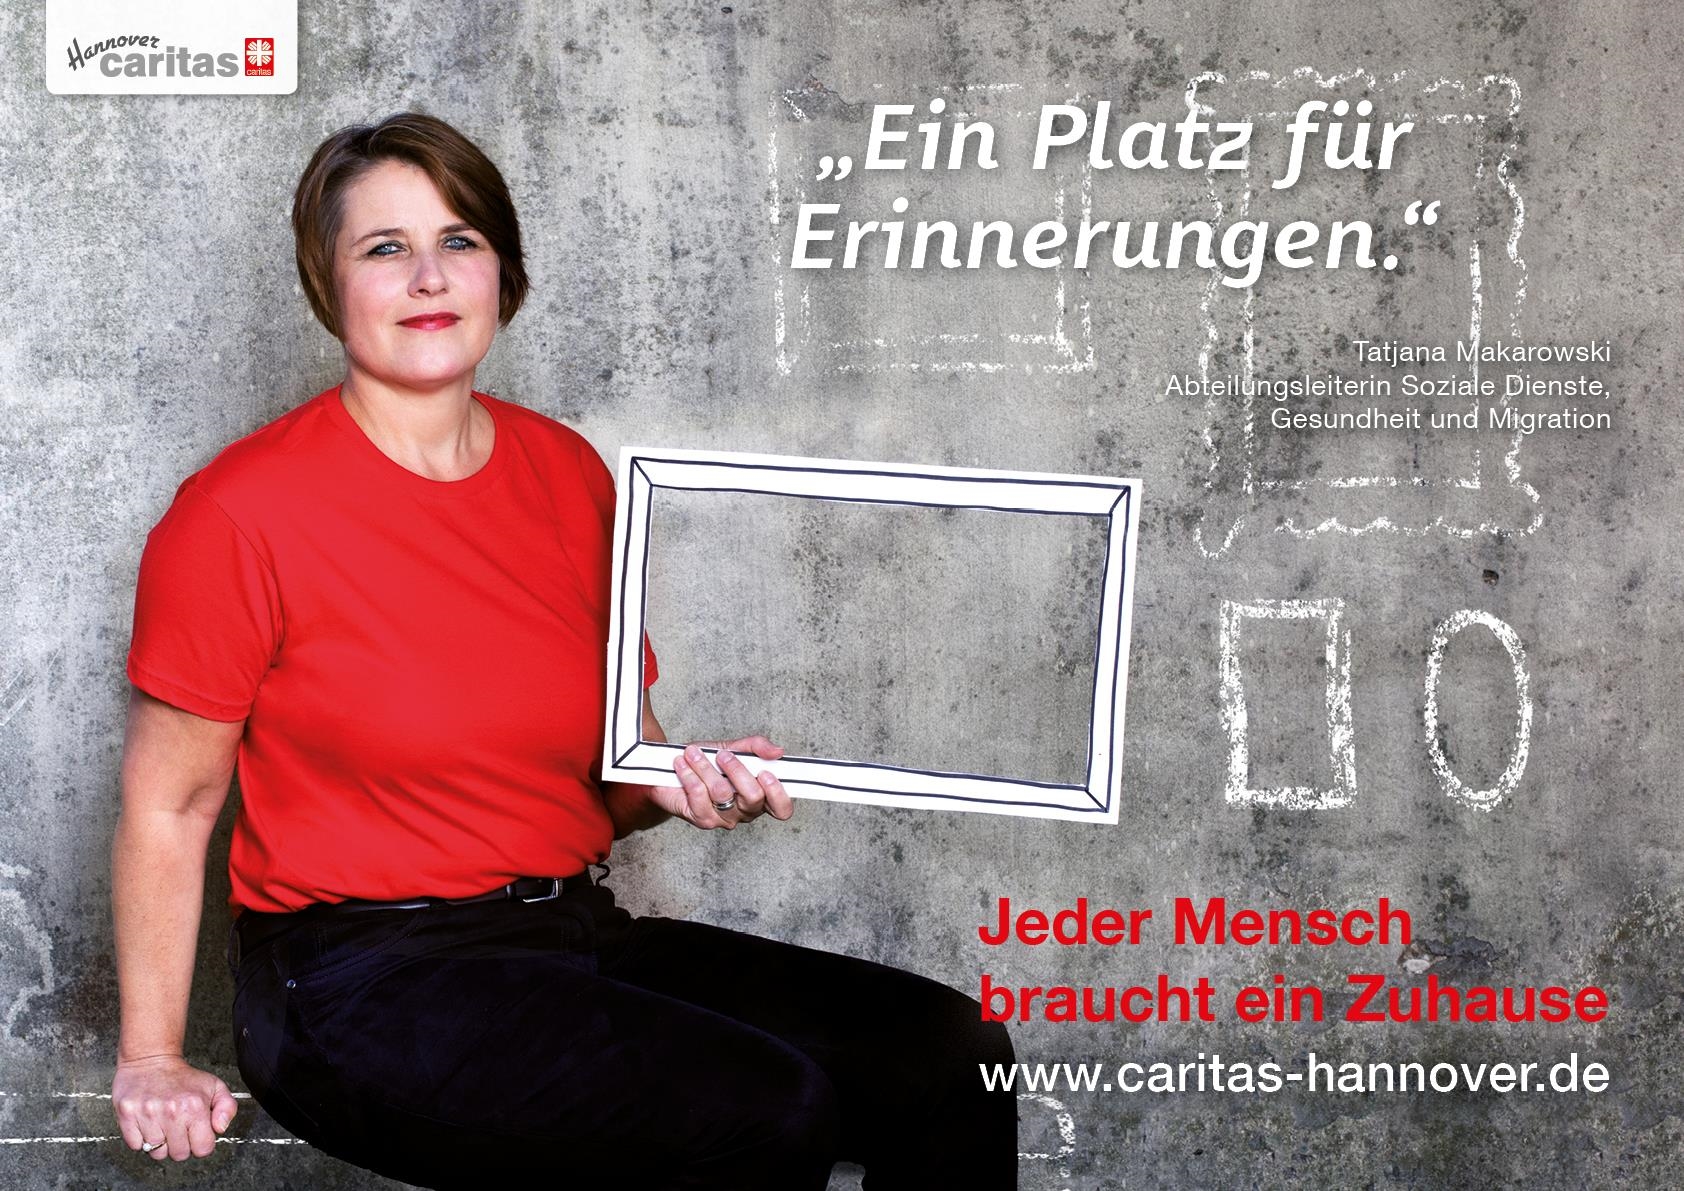 Zuhause für Jeden - - 019 - Caritas Hannover gegen Wohnungsnot Jahreskampagne (8) (Andrea Seifert)